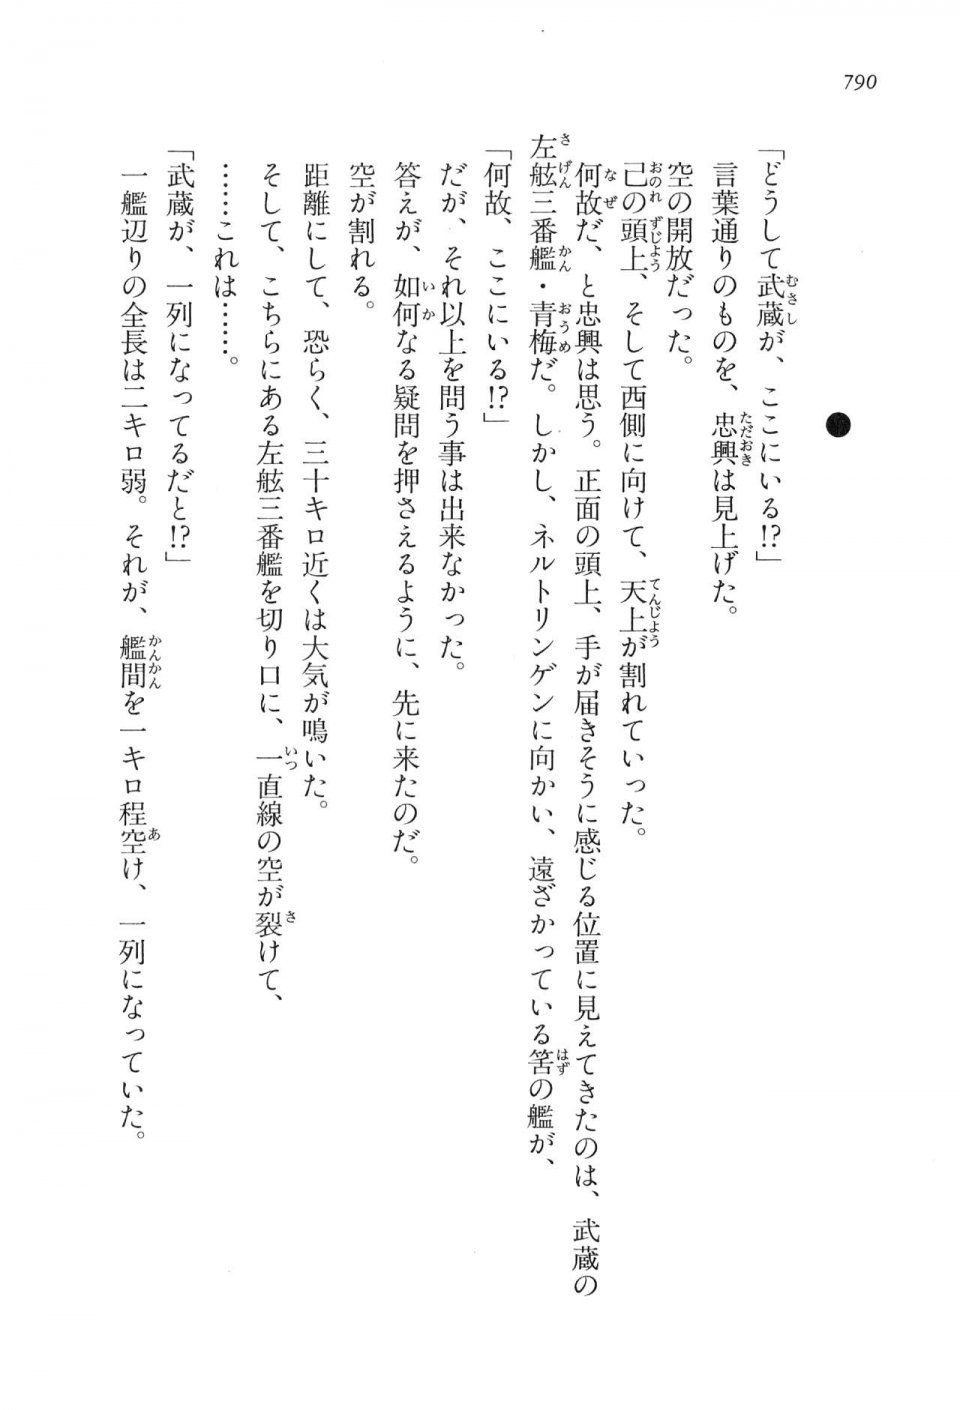 Kyoukai Senjou no Horizon LN Vol 16(7A) - Photo #790